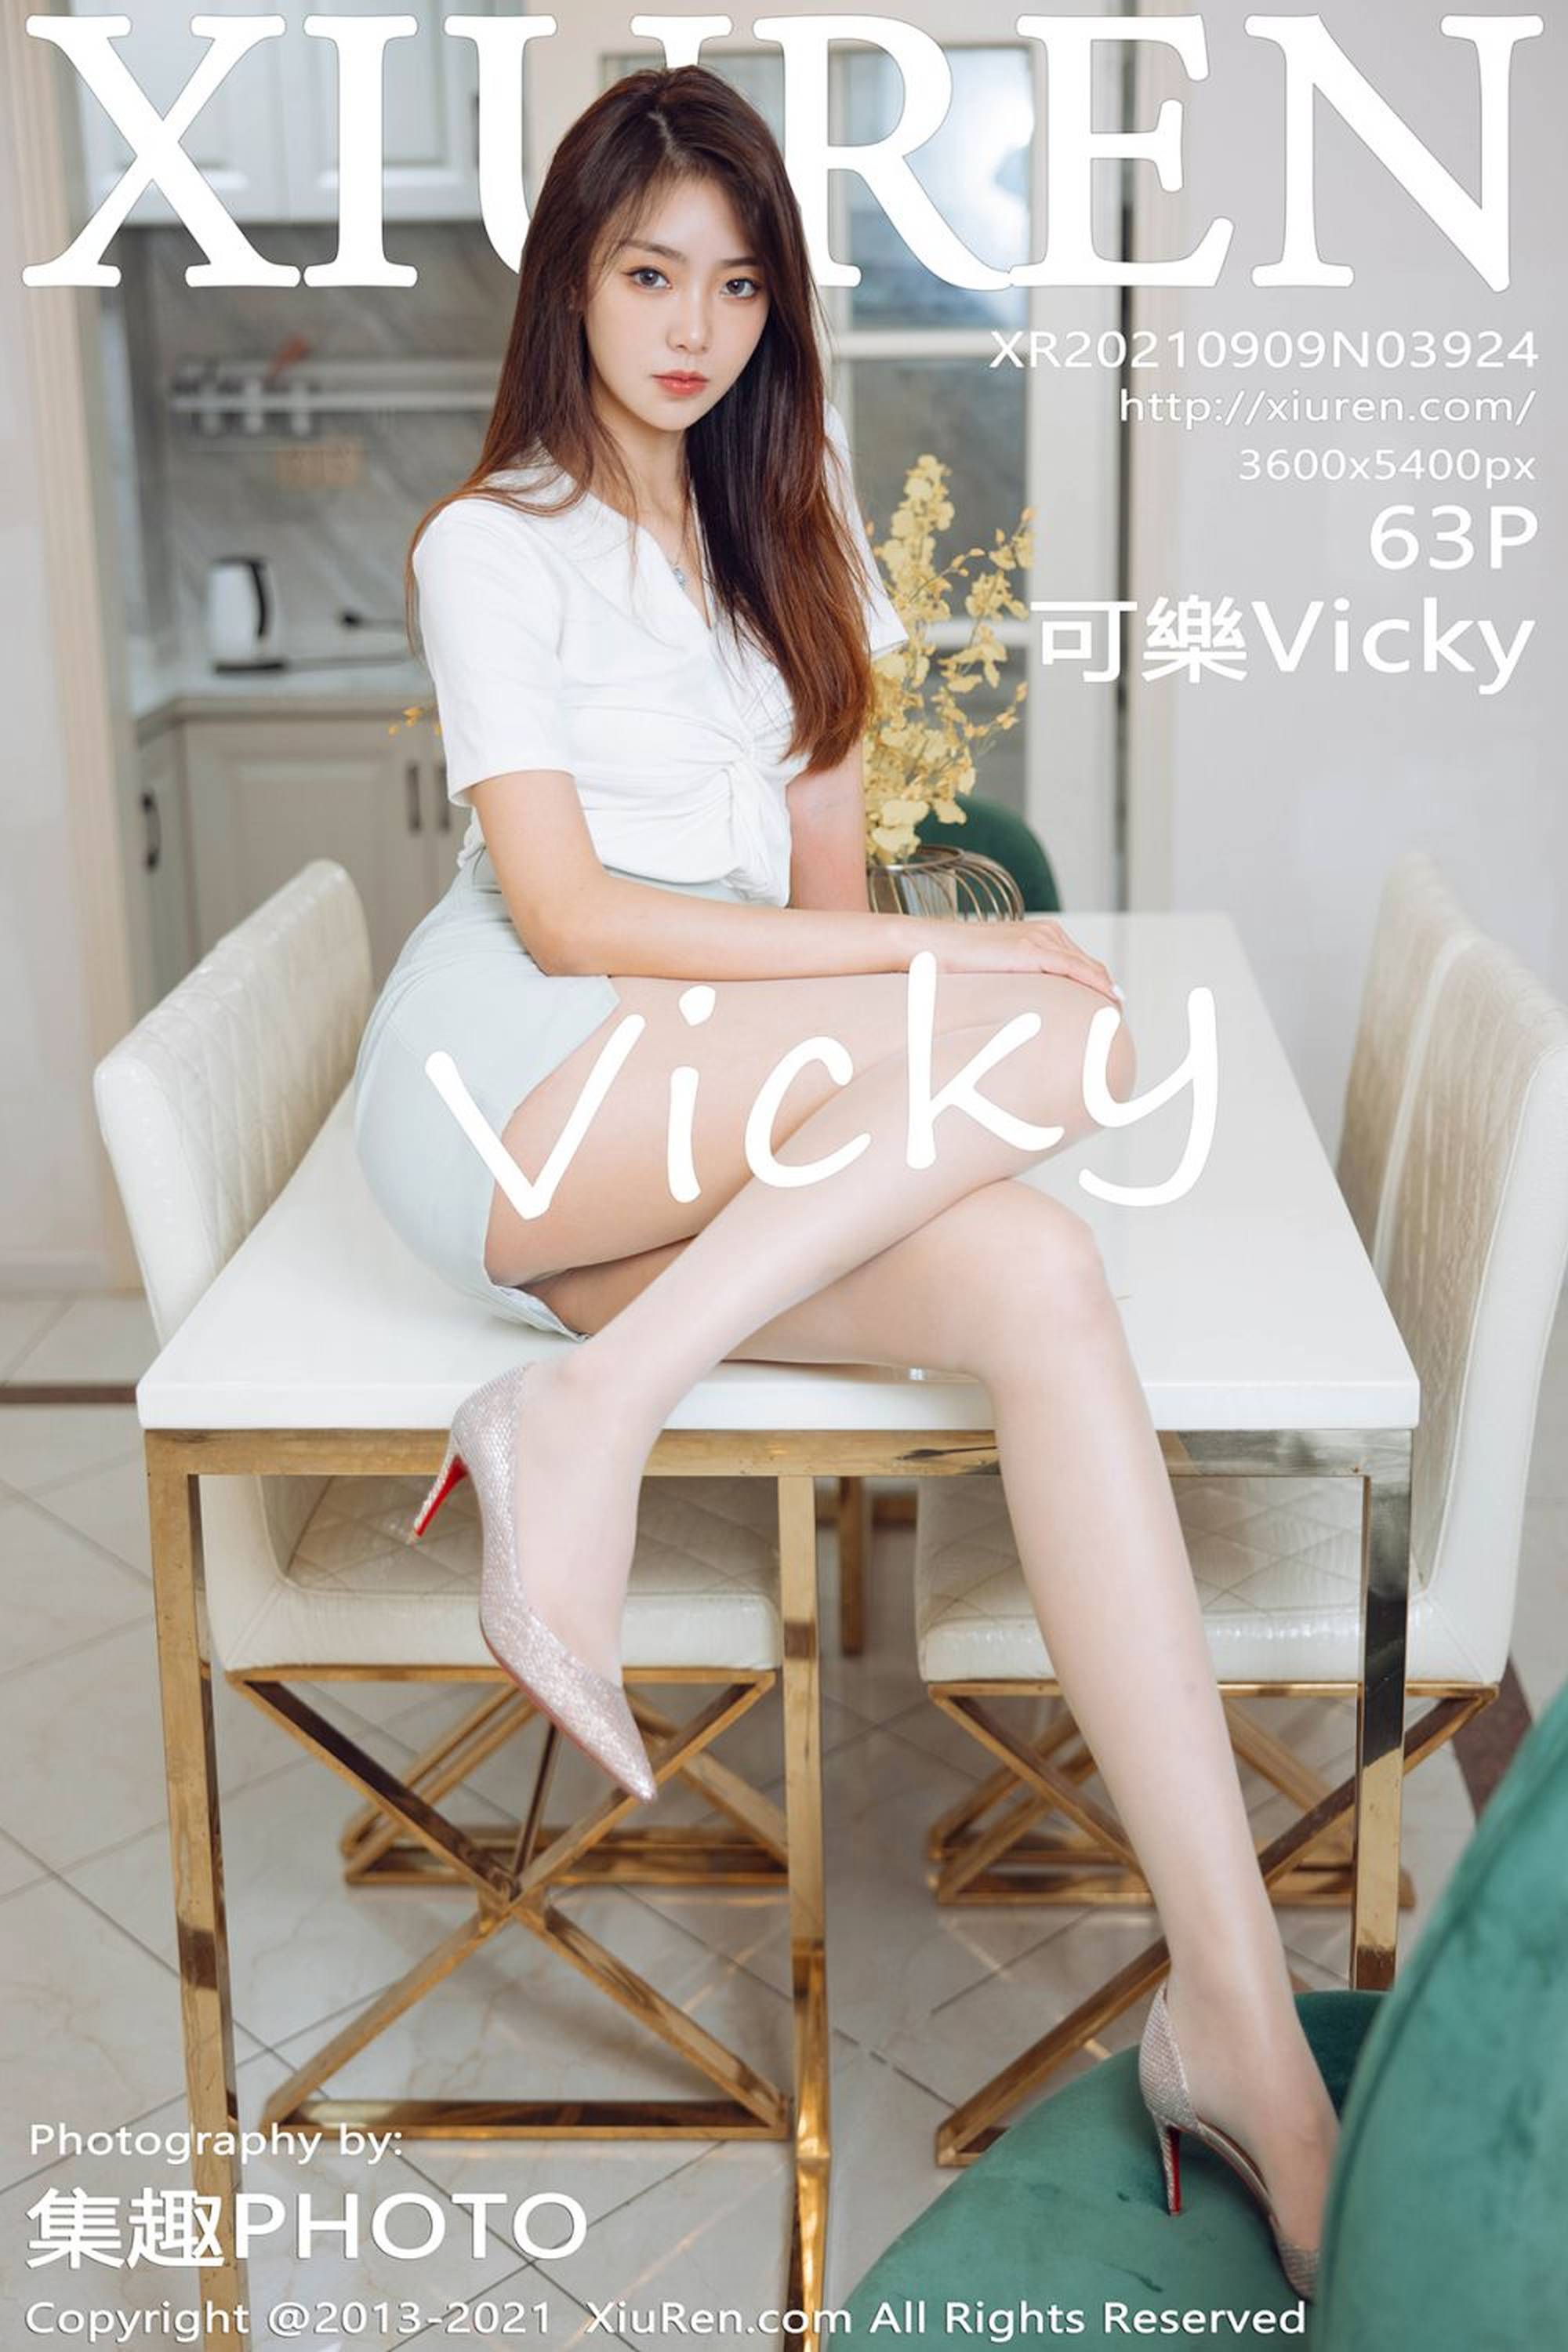 【Xiuren秀人系列】2021.09.09 No.3924 可樂Vicky 完整版無水印寫真【64P】 - 貼圖 - 絲襪美腿 -